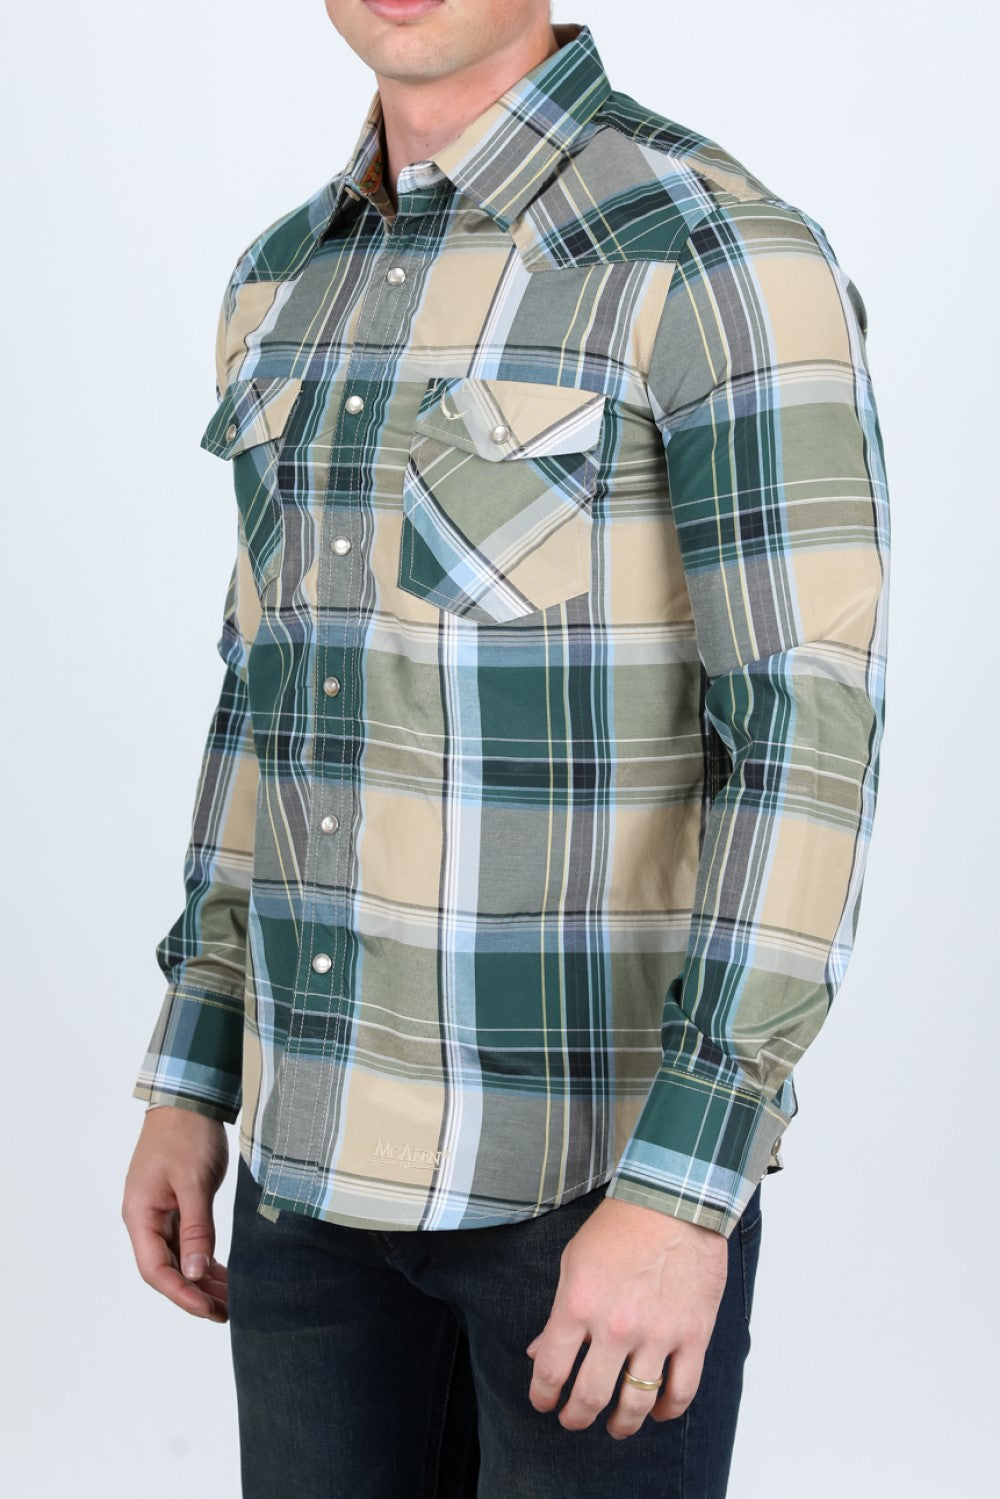 Camisa de Cuadros MC-200-54 - Camisas Vaqueras de Manga Larga para Hombre - Camisas Vaqueras Cafe para Hombre (2)